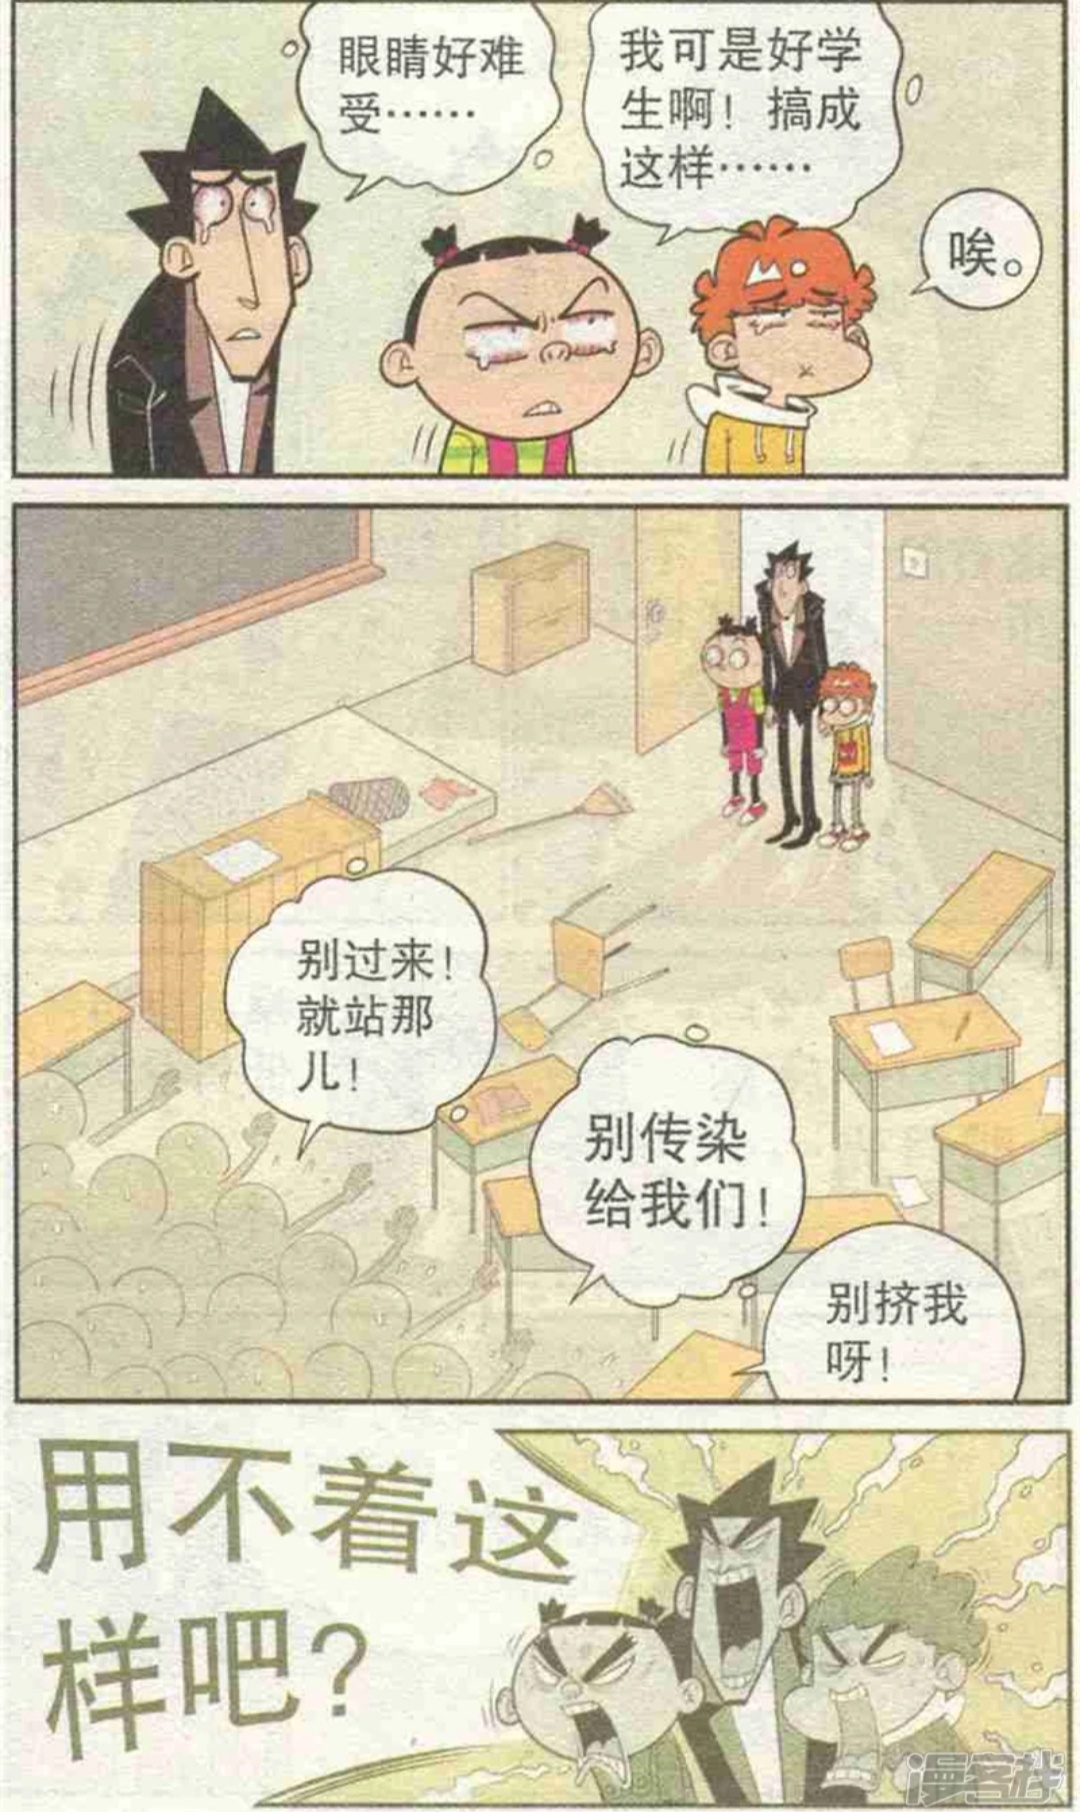 阿衰漫画，金老师炒股记（上）  金老师迷上炒股